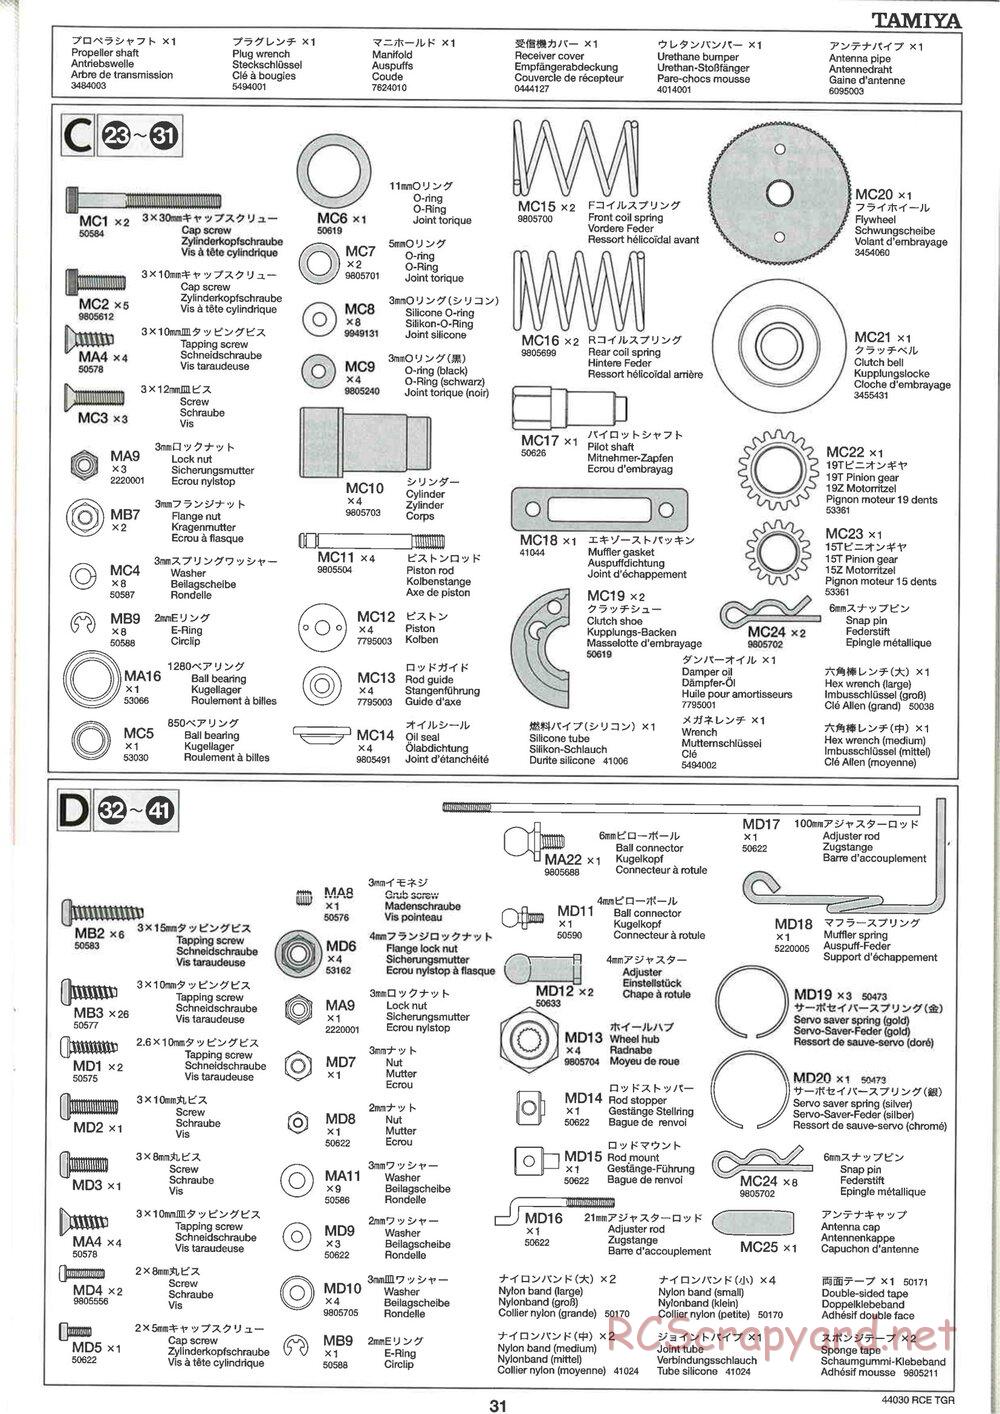 Tamiya - TGR Chassis - Manual - Page 31